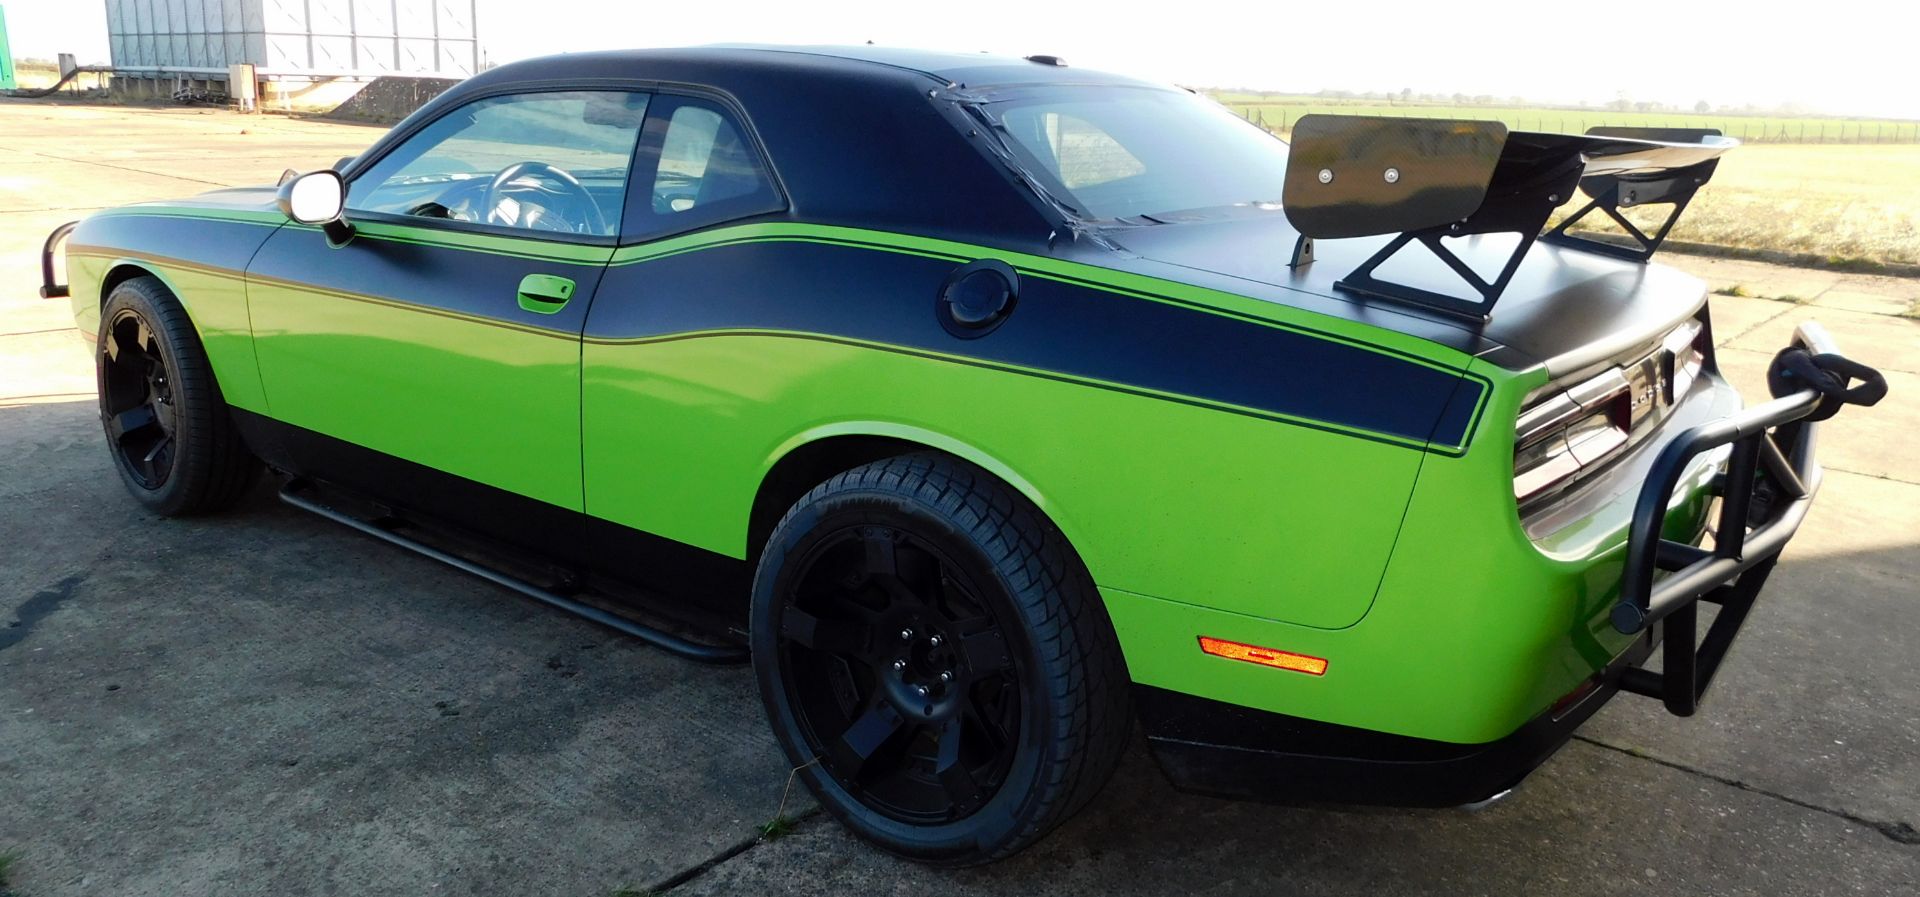 Dodge Challenger LHD SRT 2 Door Saloon, Replica of Michelle’s Car Seen in “Fast 7”*, Hemi 392 cu - Image 9 of 16